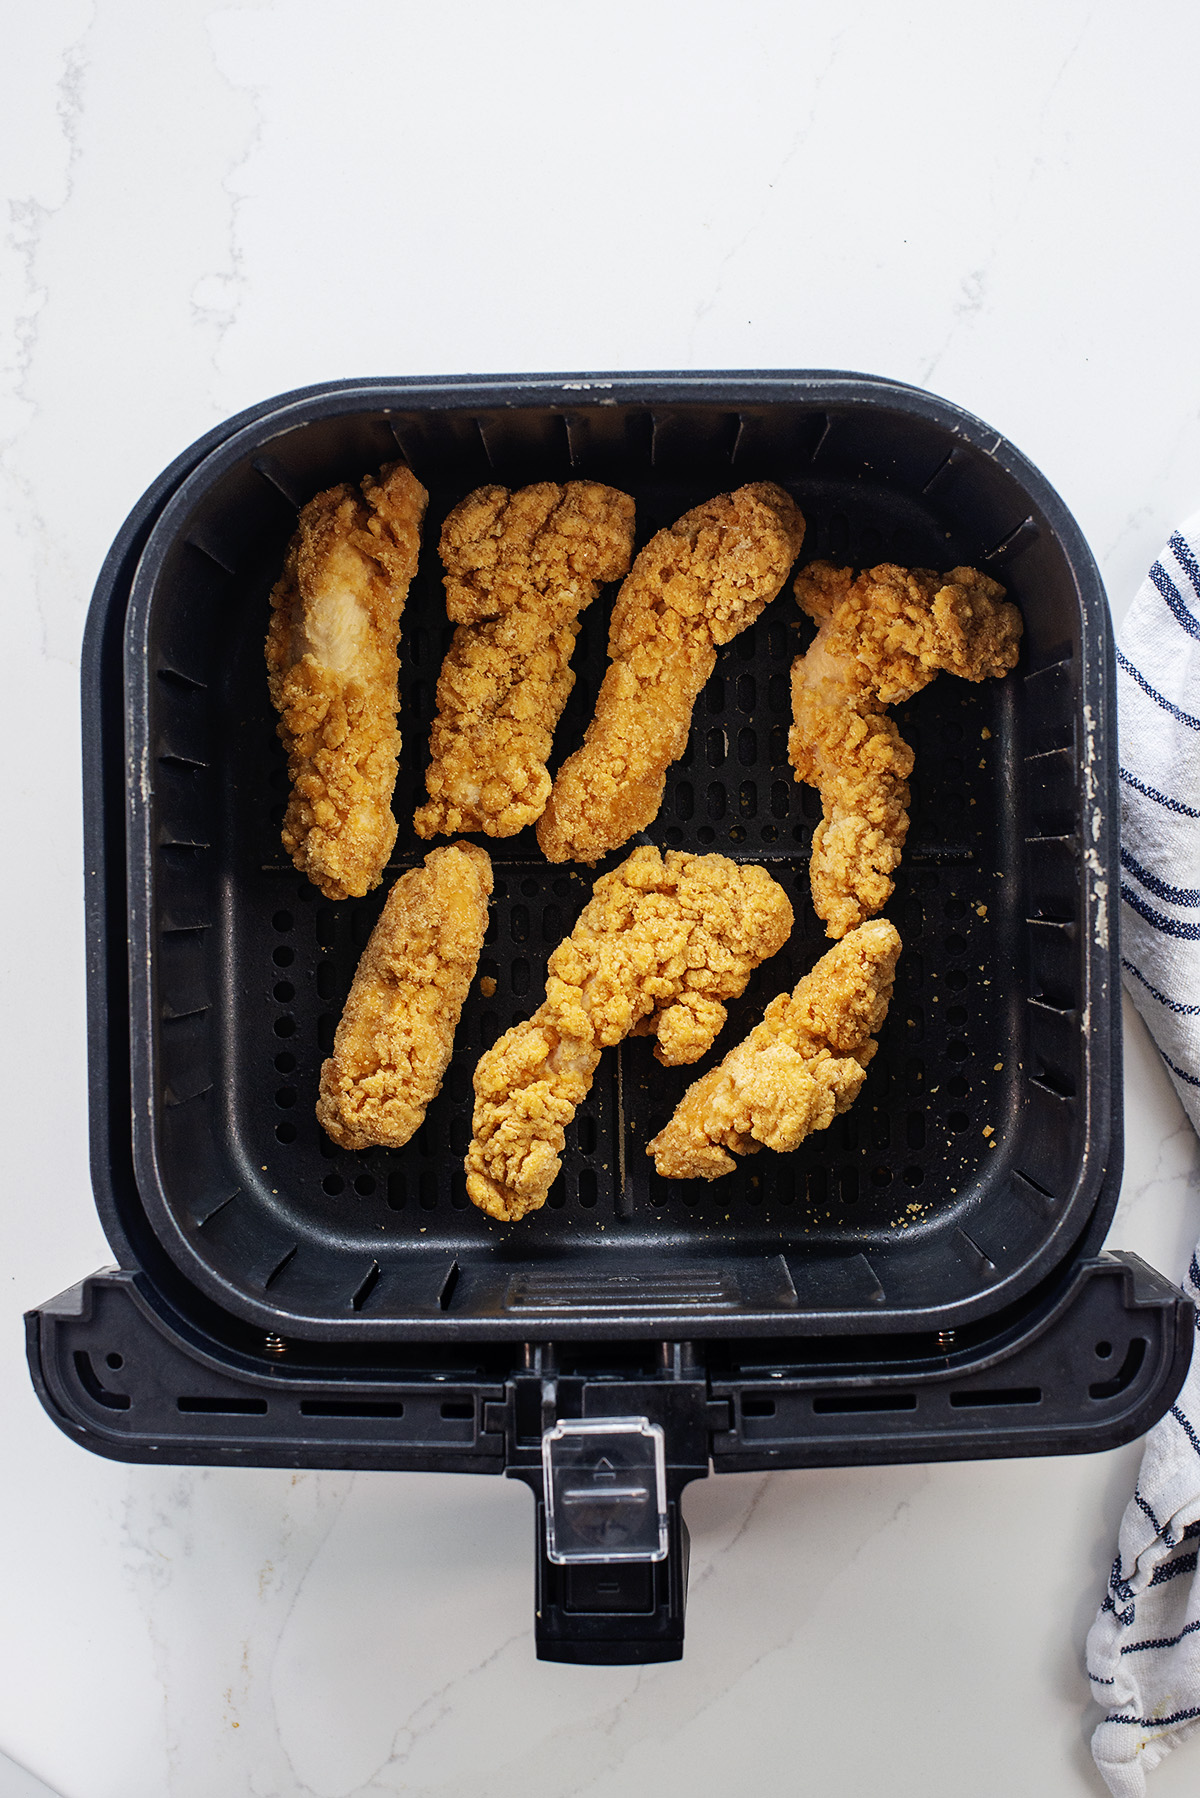 Seven chicken strips in an air fryer basket.